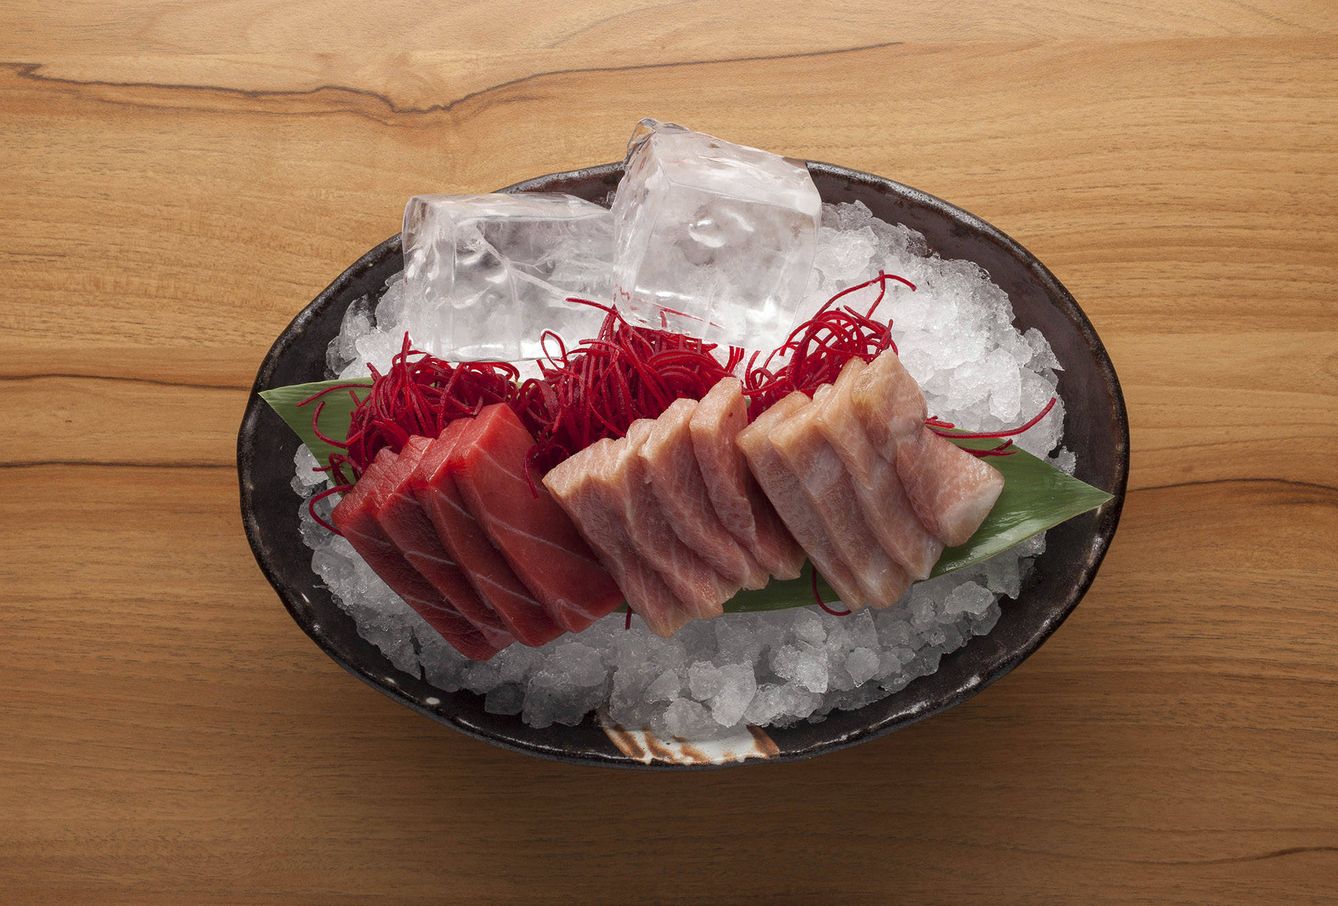 El sashimi, servido sobre gruesos cubos de hielo (siguiendo la tradición japonesa)